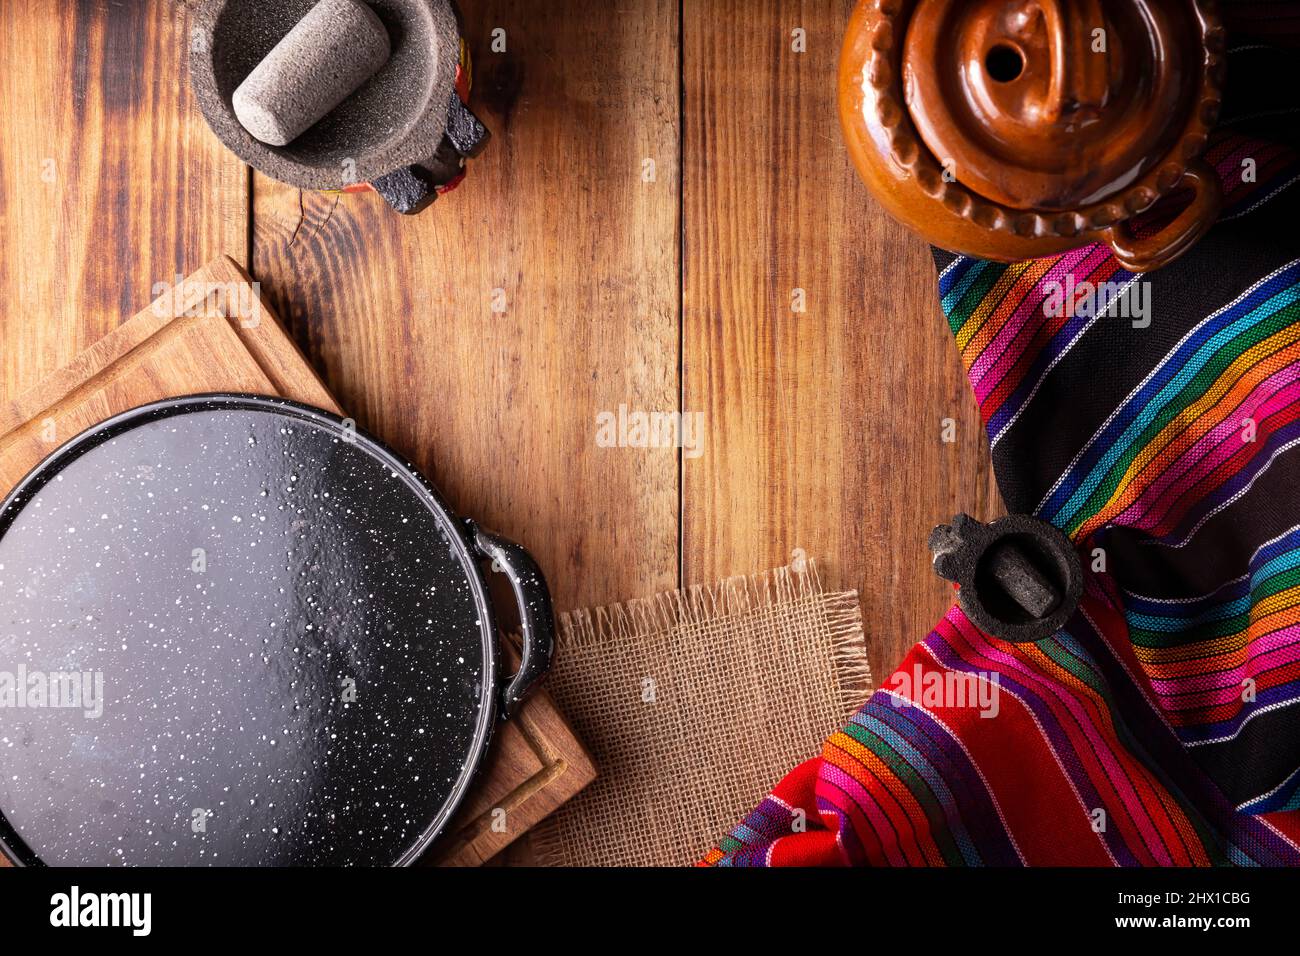 Cuisine mexicaine batterie de cuisine. Tissus traditionnels colorés, comal de peltre, olla de barro et molajete sur table rustique en bois. Vue de dessus avec espace de copie Banque D'Images